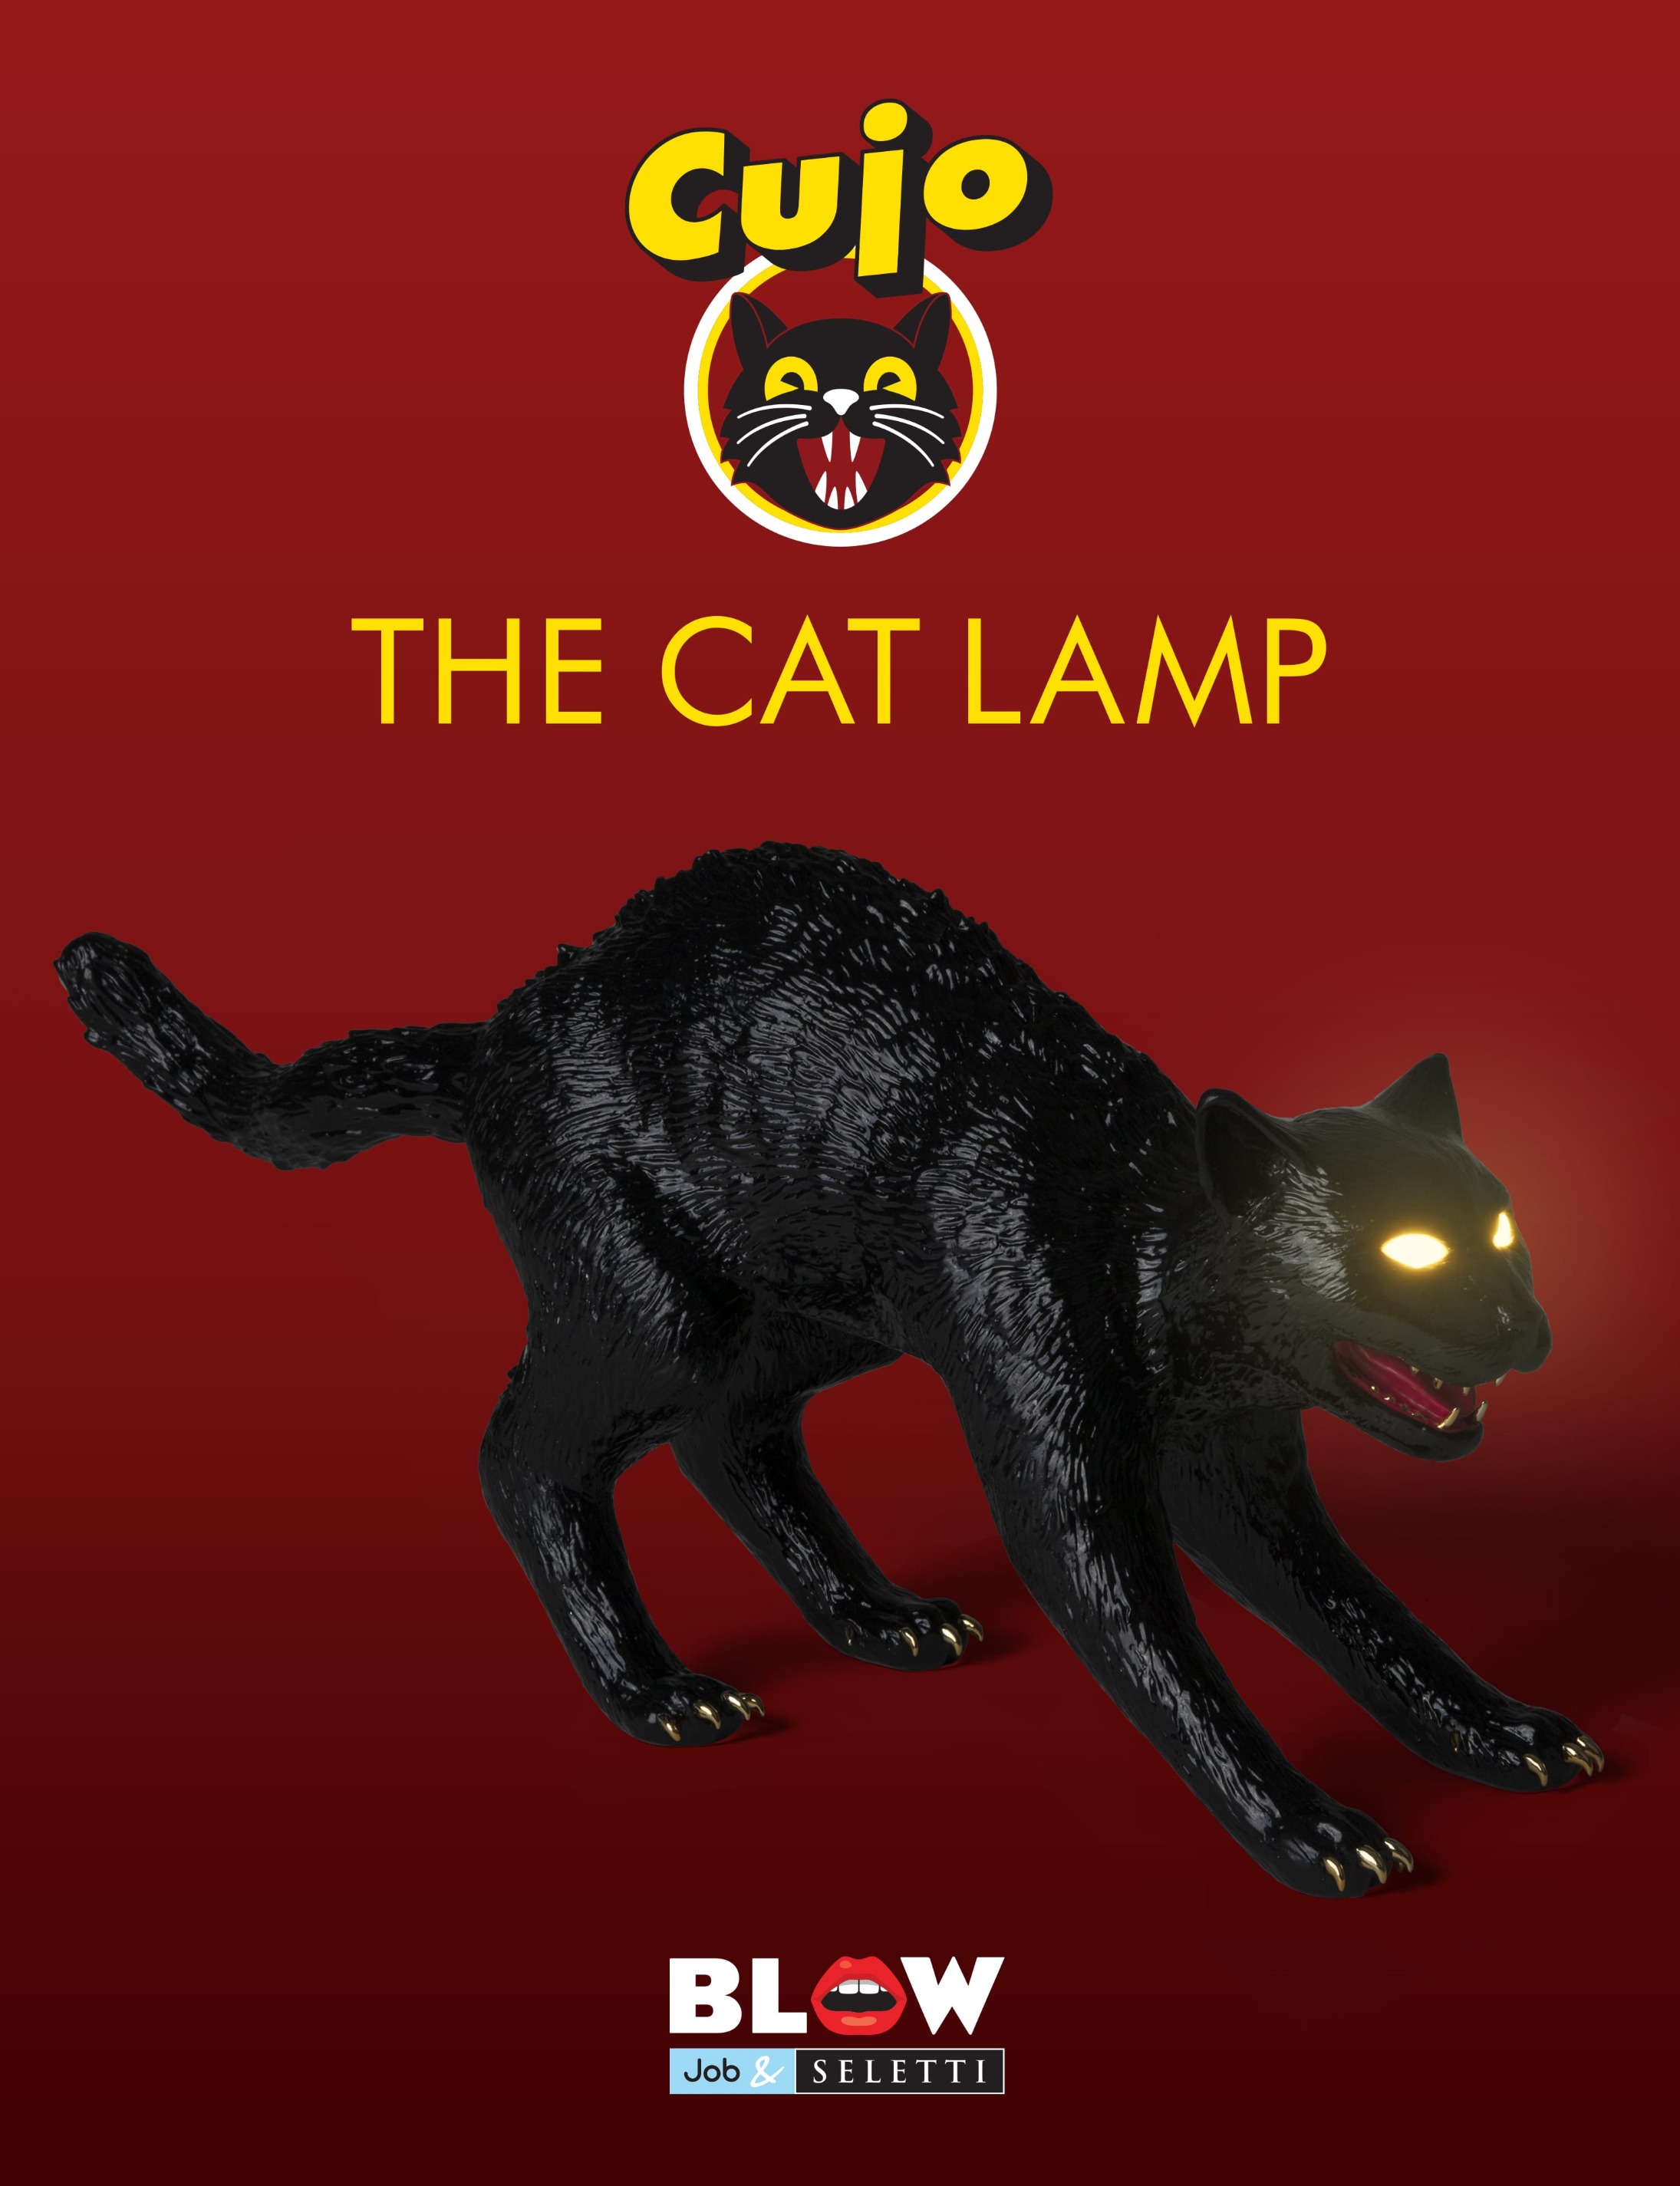 SELETTI lampada da tavolo gatto CUJO THE CAT LAMP